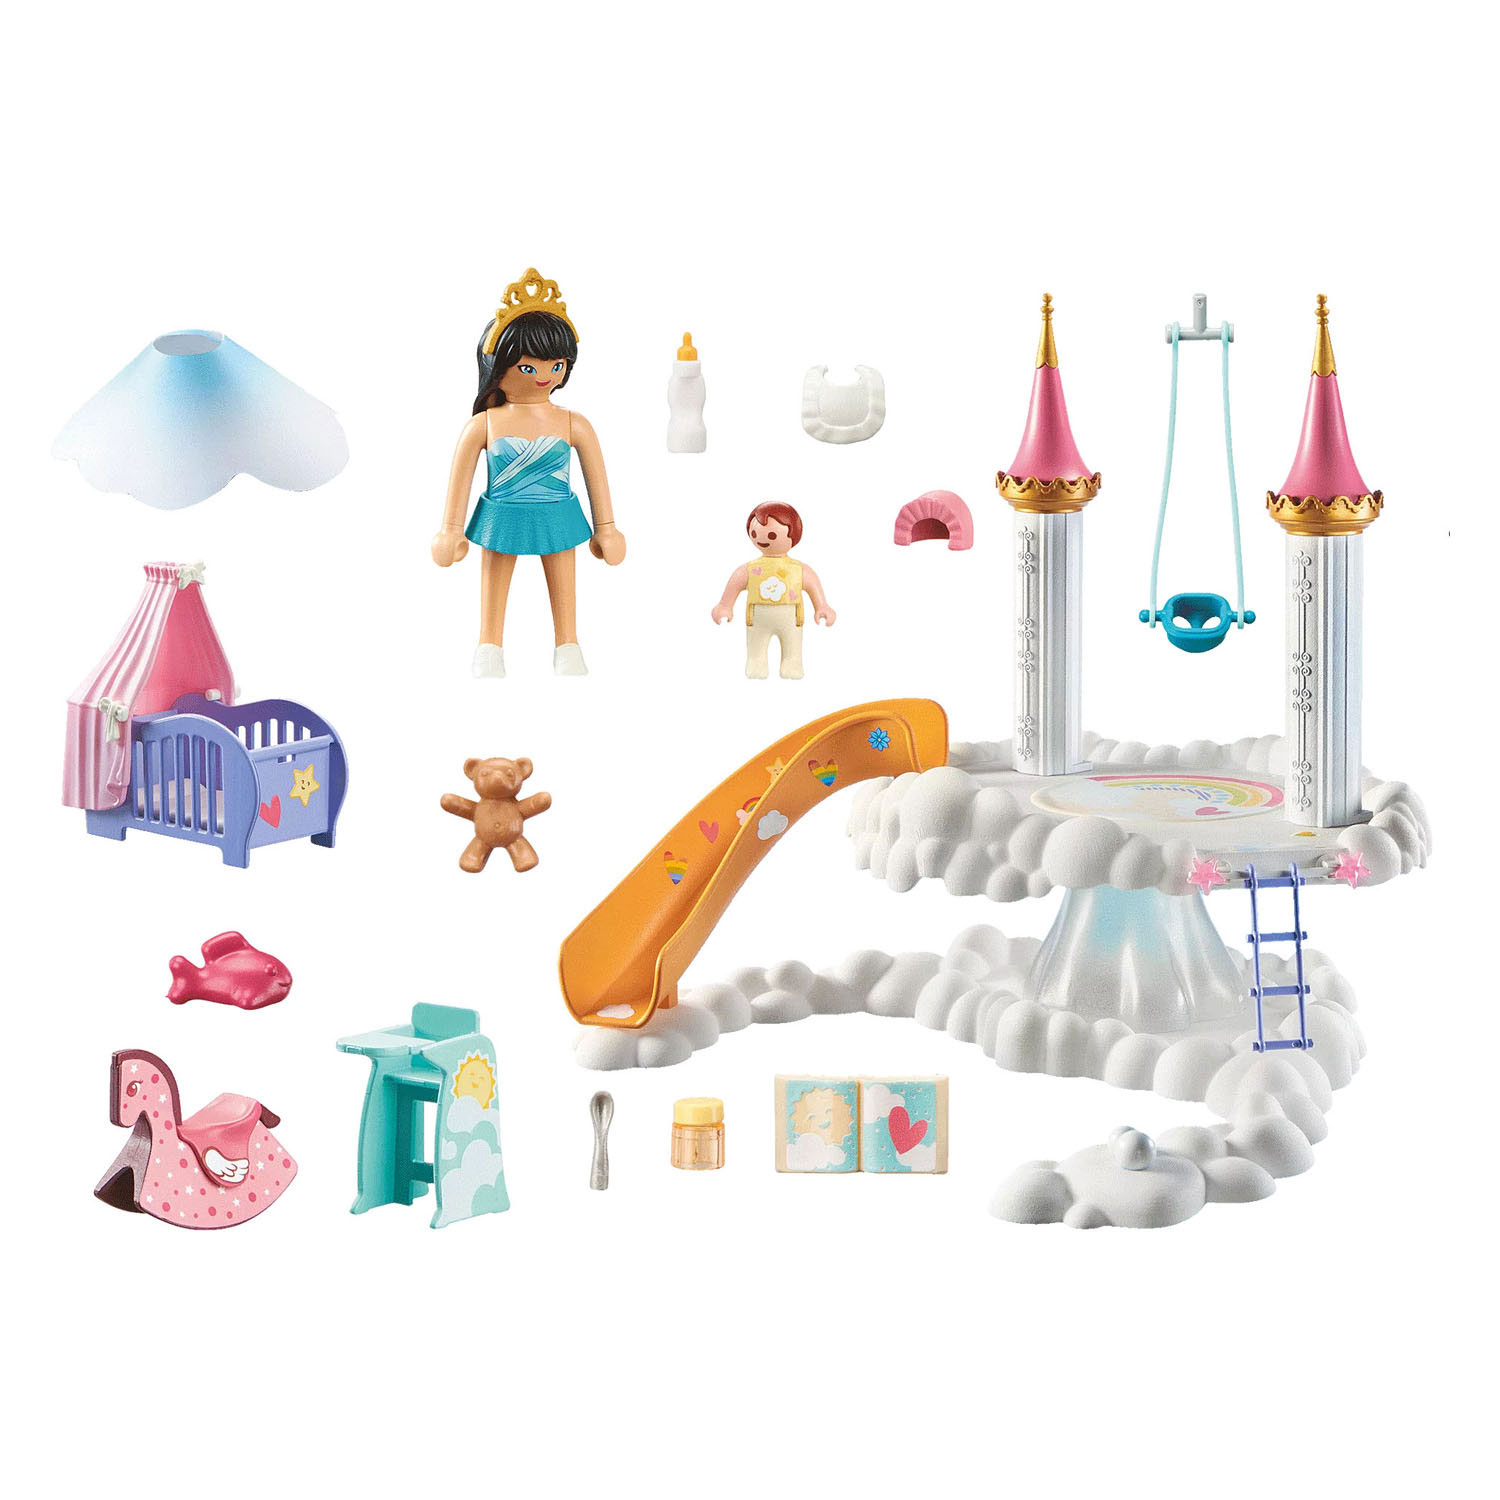 Set de joaca - Camera copilului in nori | Playmobil